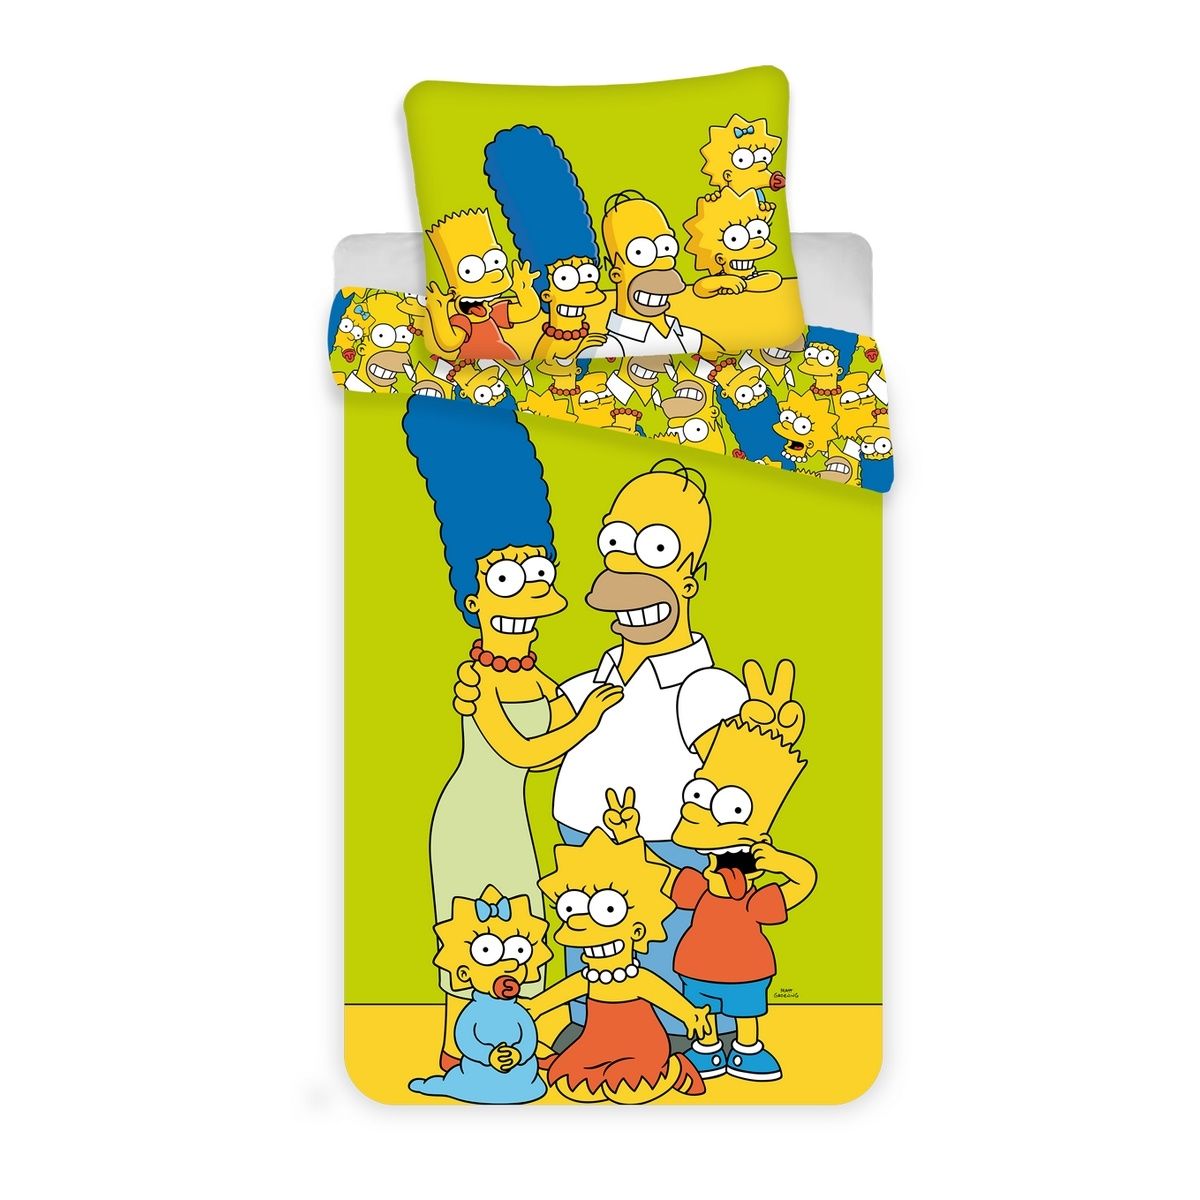 Jerry Fabrics Dětské bavlněné povlečení Simpsons yellow green, 140 x 200 cm, 70 x 90 cm - 4home.cz